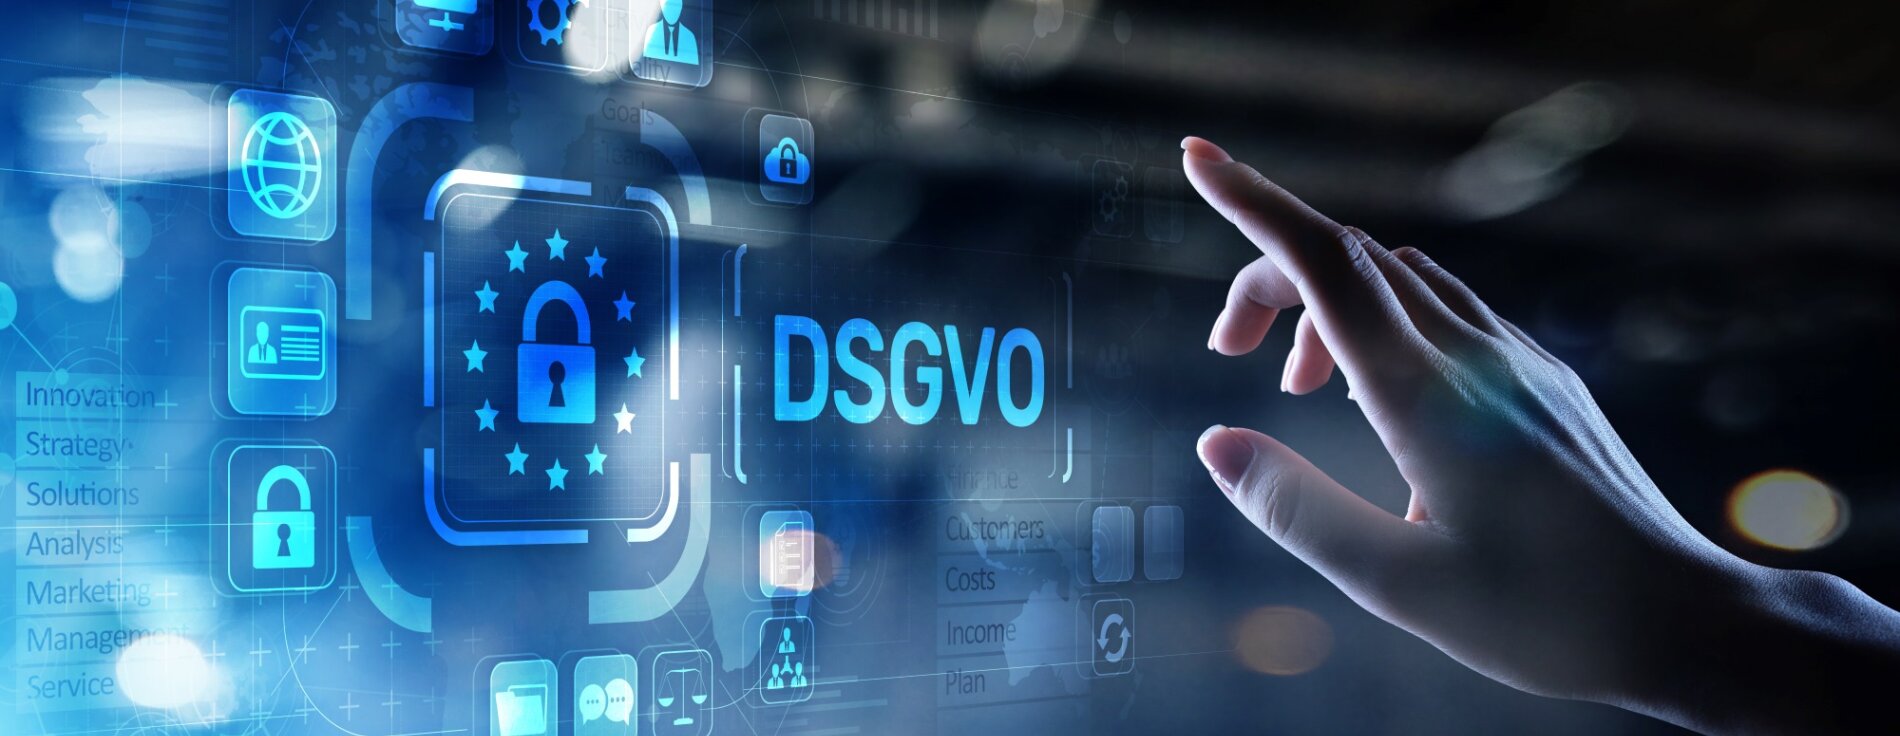 Grafik zur DSGVO mit virtuellen Icons